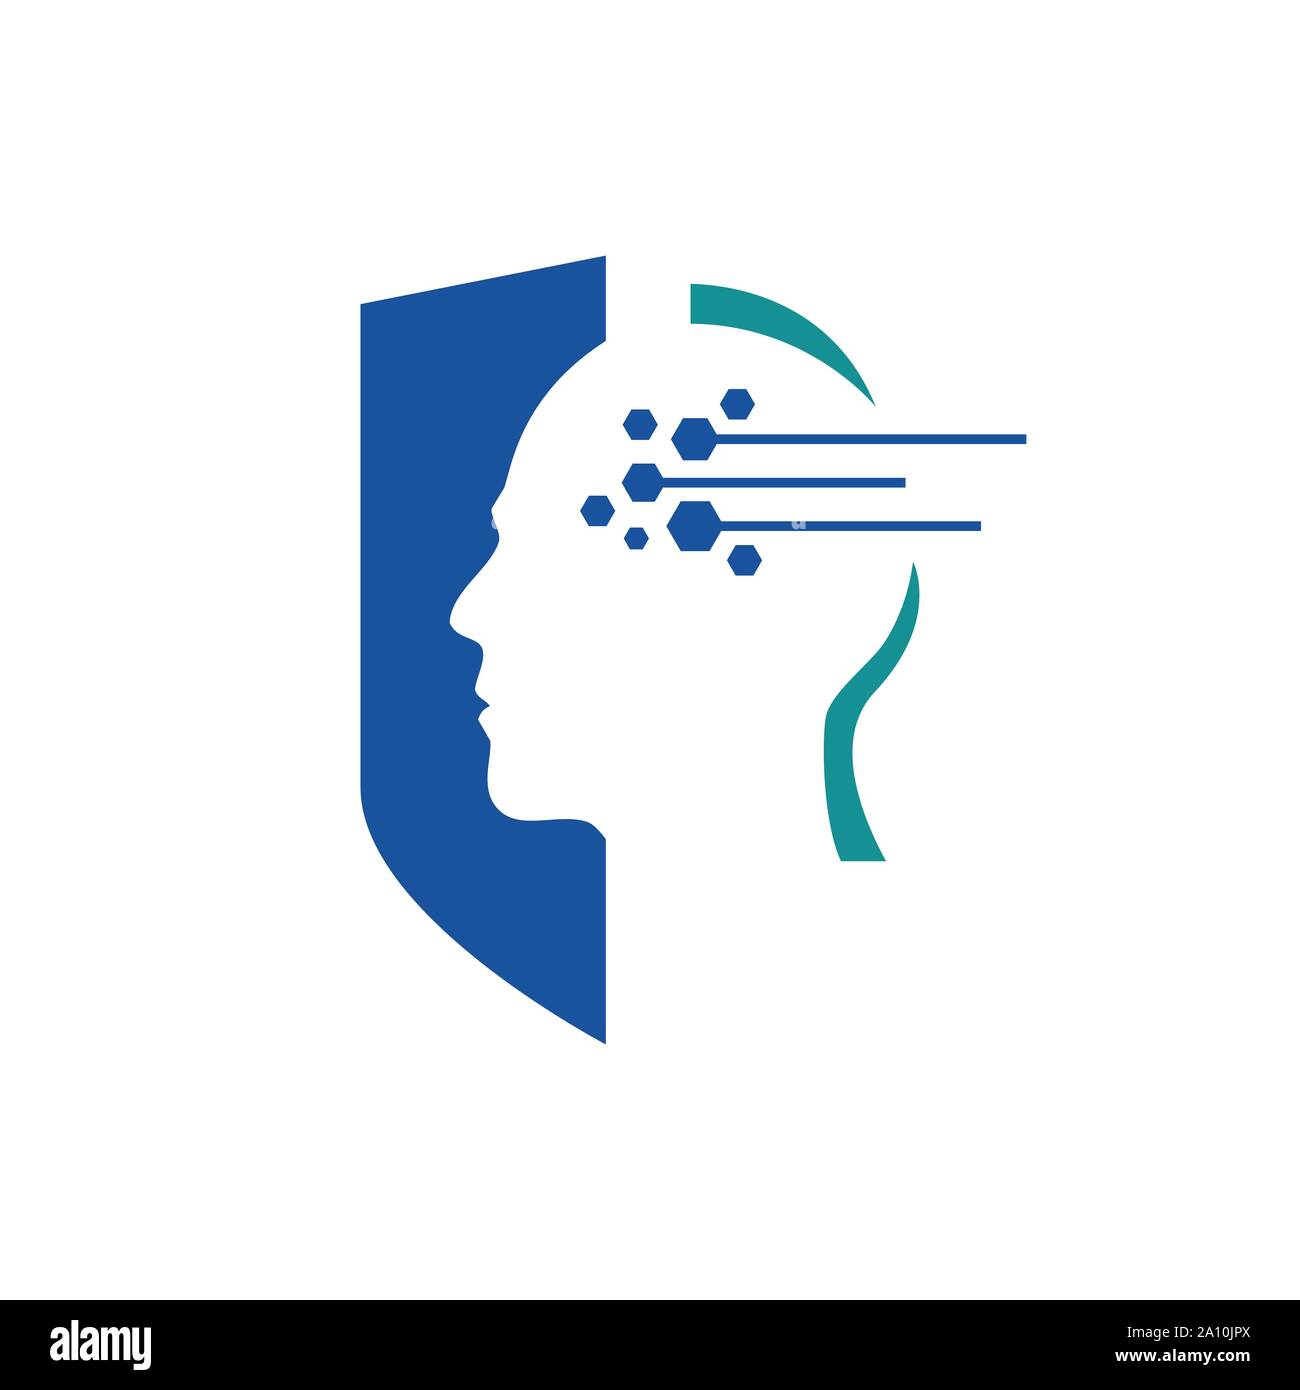 Menschlichen Kopf, Schild, Linien und Punkte eine Künstliche Intelligenz logo Symbol vektor design Stock Vektor